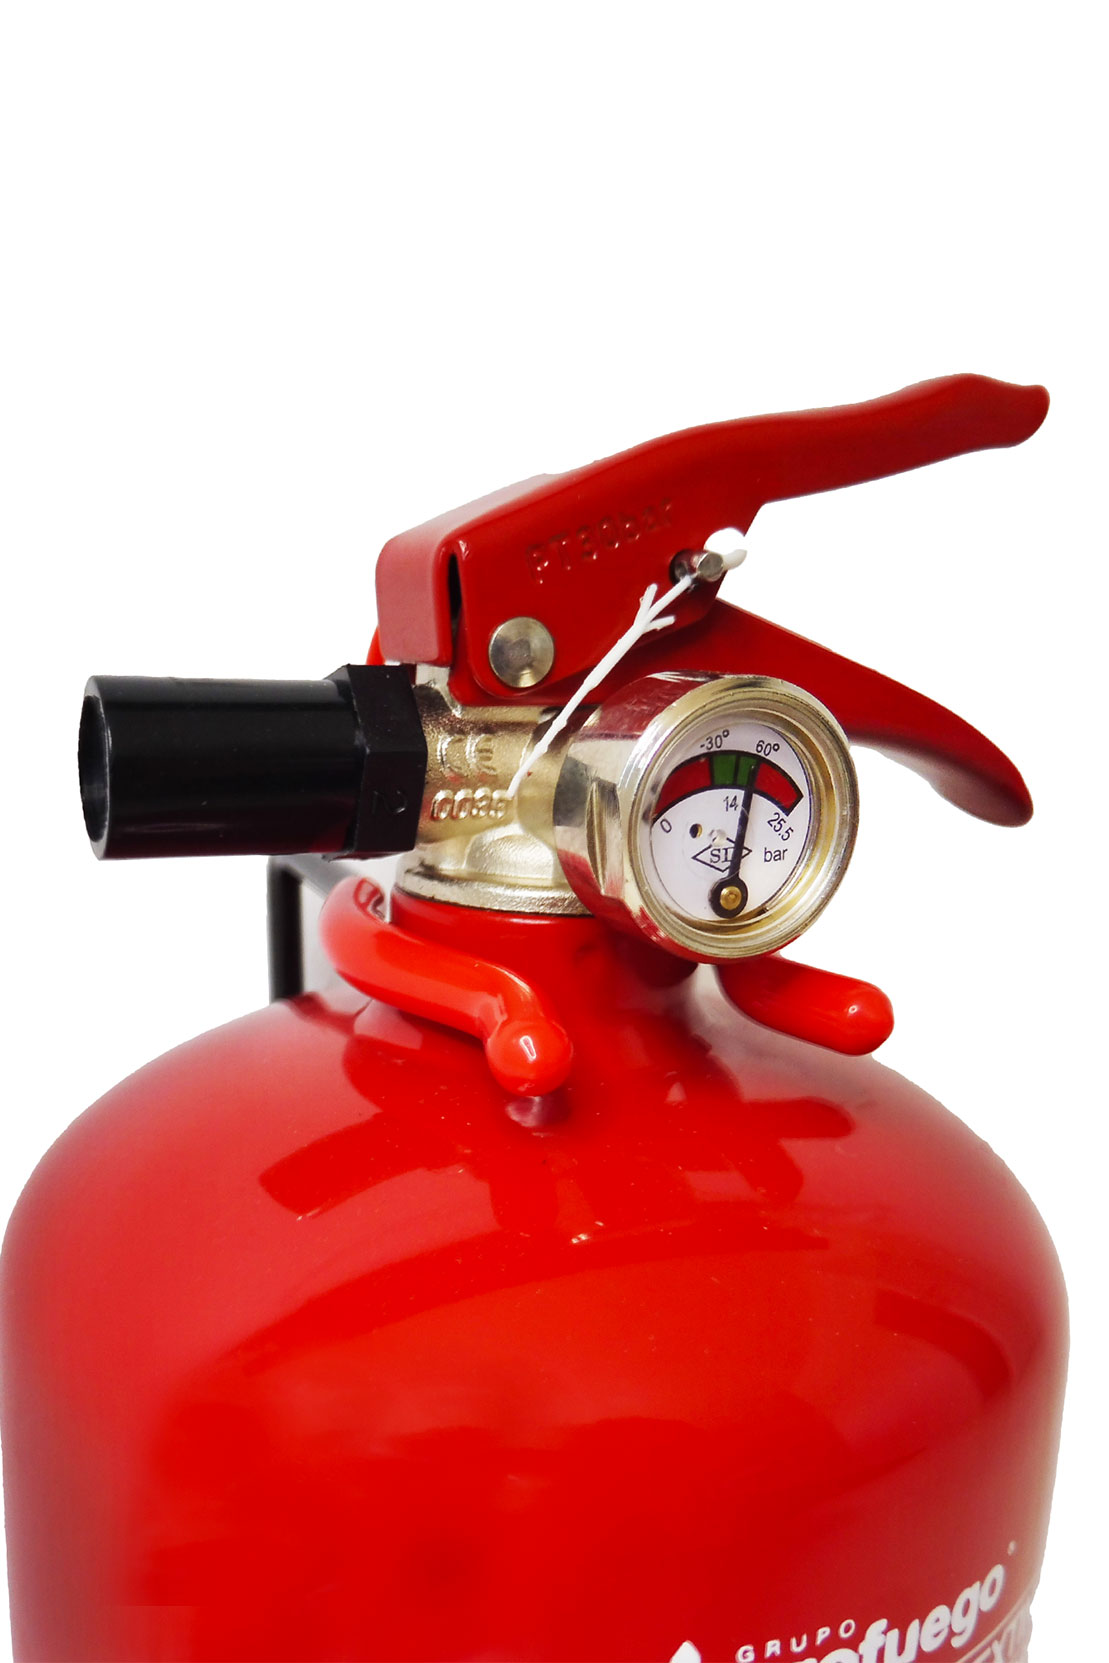 Extintor de Polvo ABC 2Kg - Extintores Online